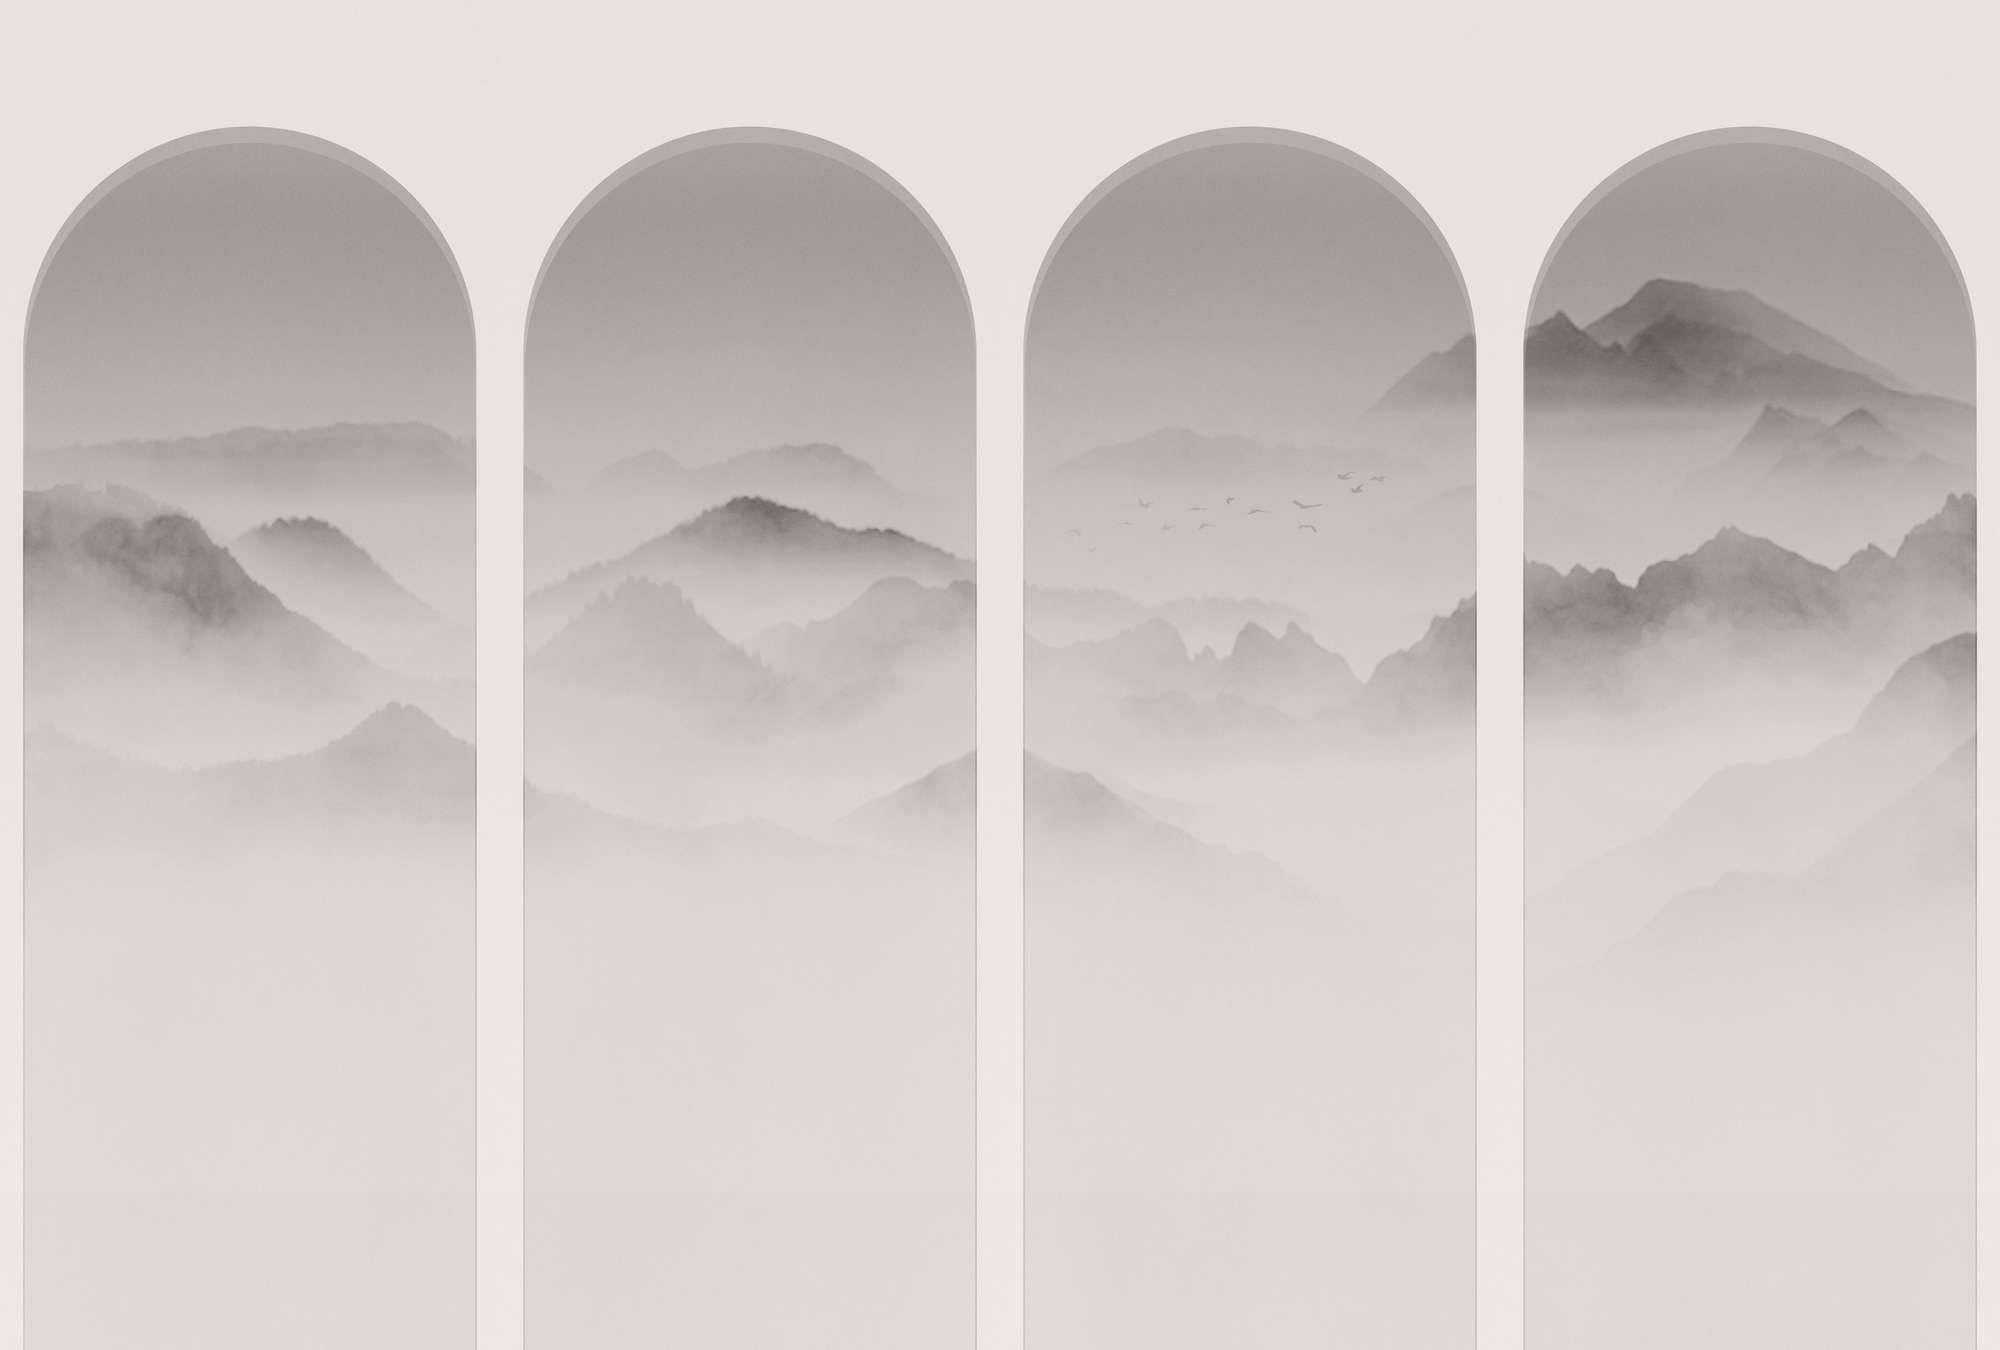             Fotomural »valle« - montañas y niebla en curvas - gris, blanco | Tela no tejida lisa, ligeramente nacarada y brillante
        